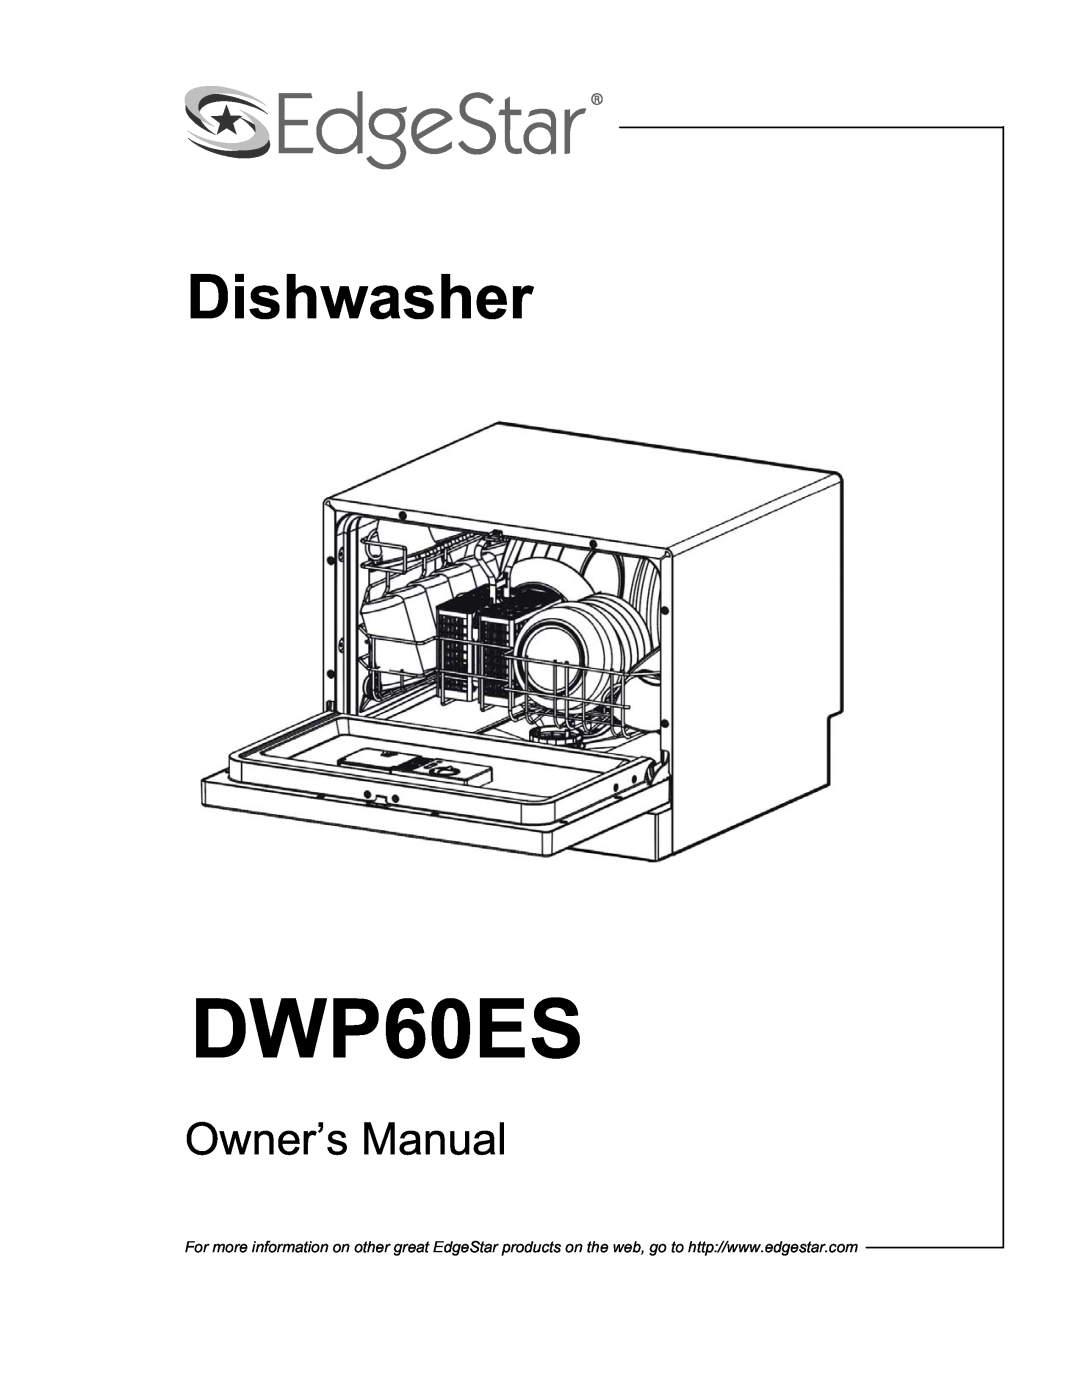 EdgeStar DWP60ES owner manual Dishwasher 